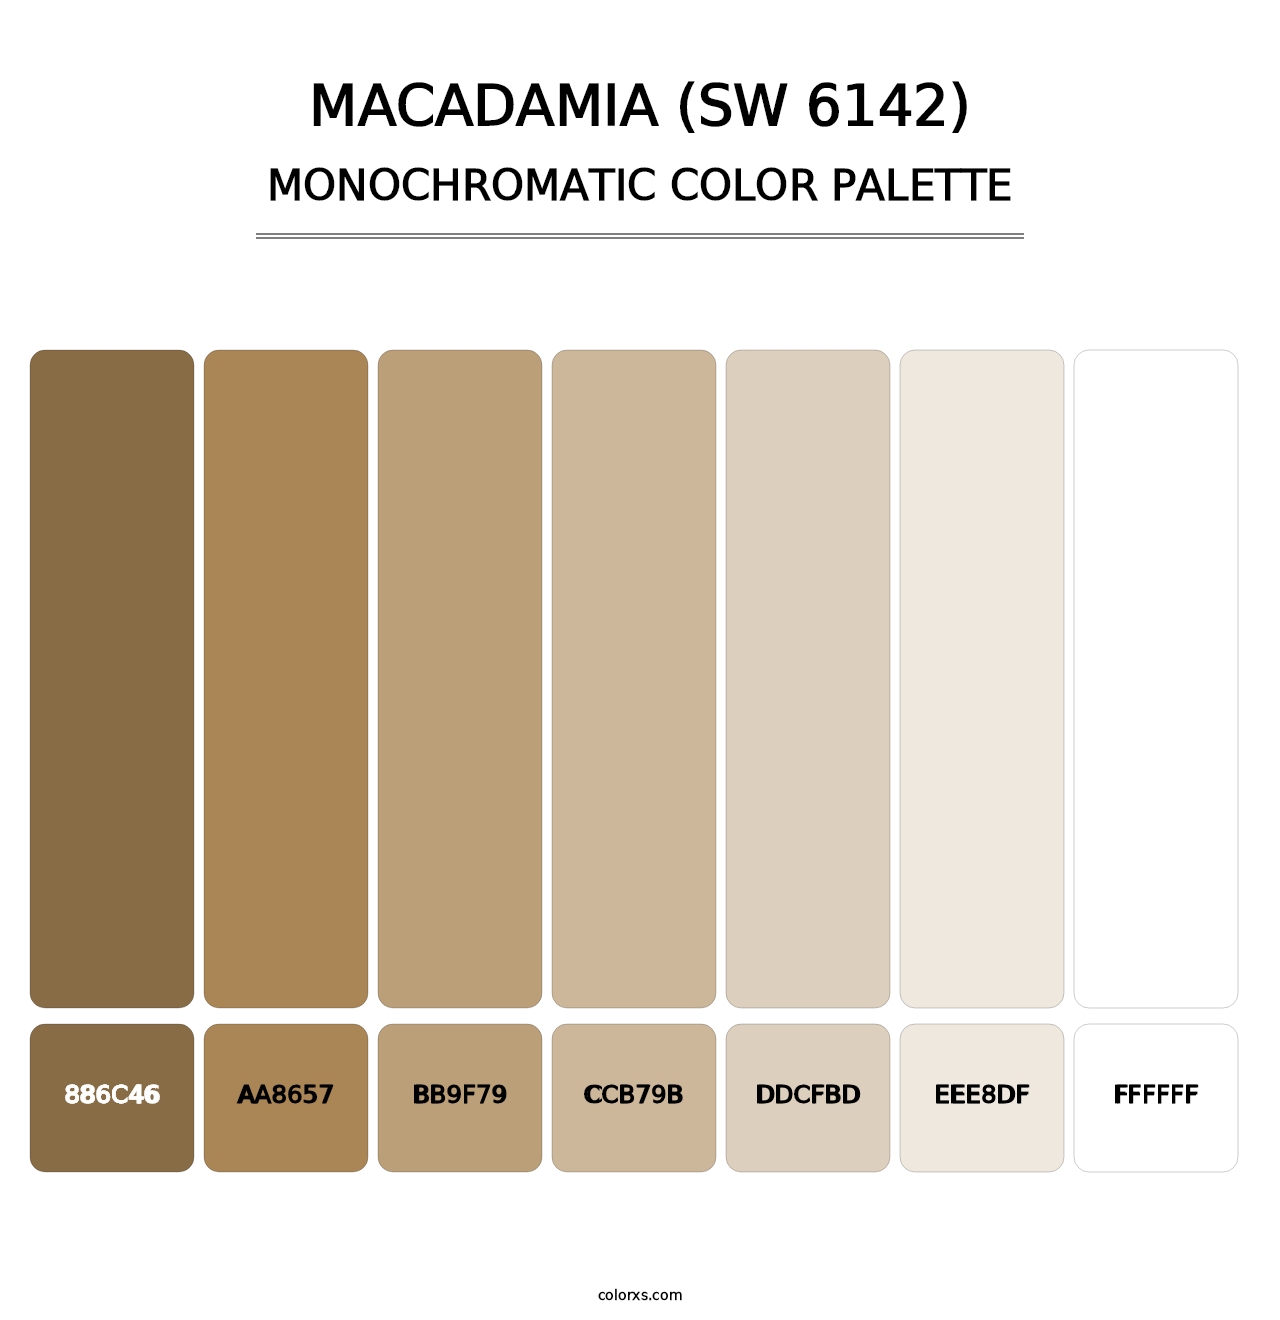 Macadamia (SW 6142) - Monochromatic Color Palette